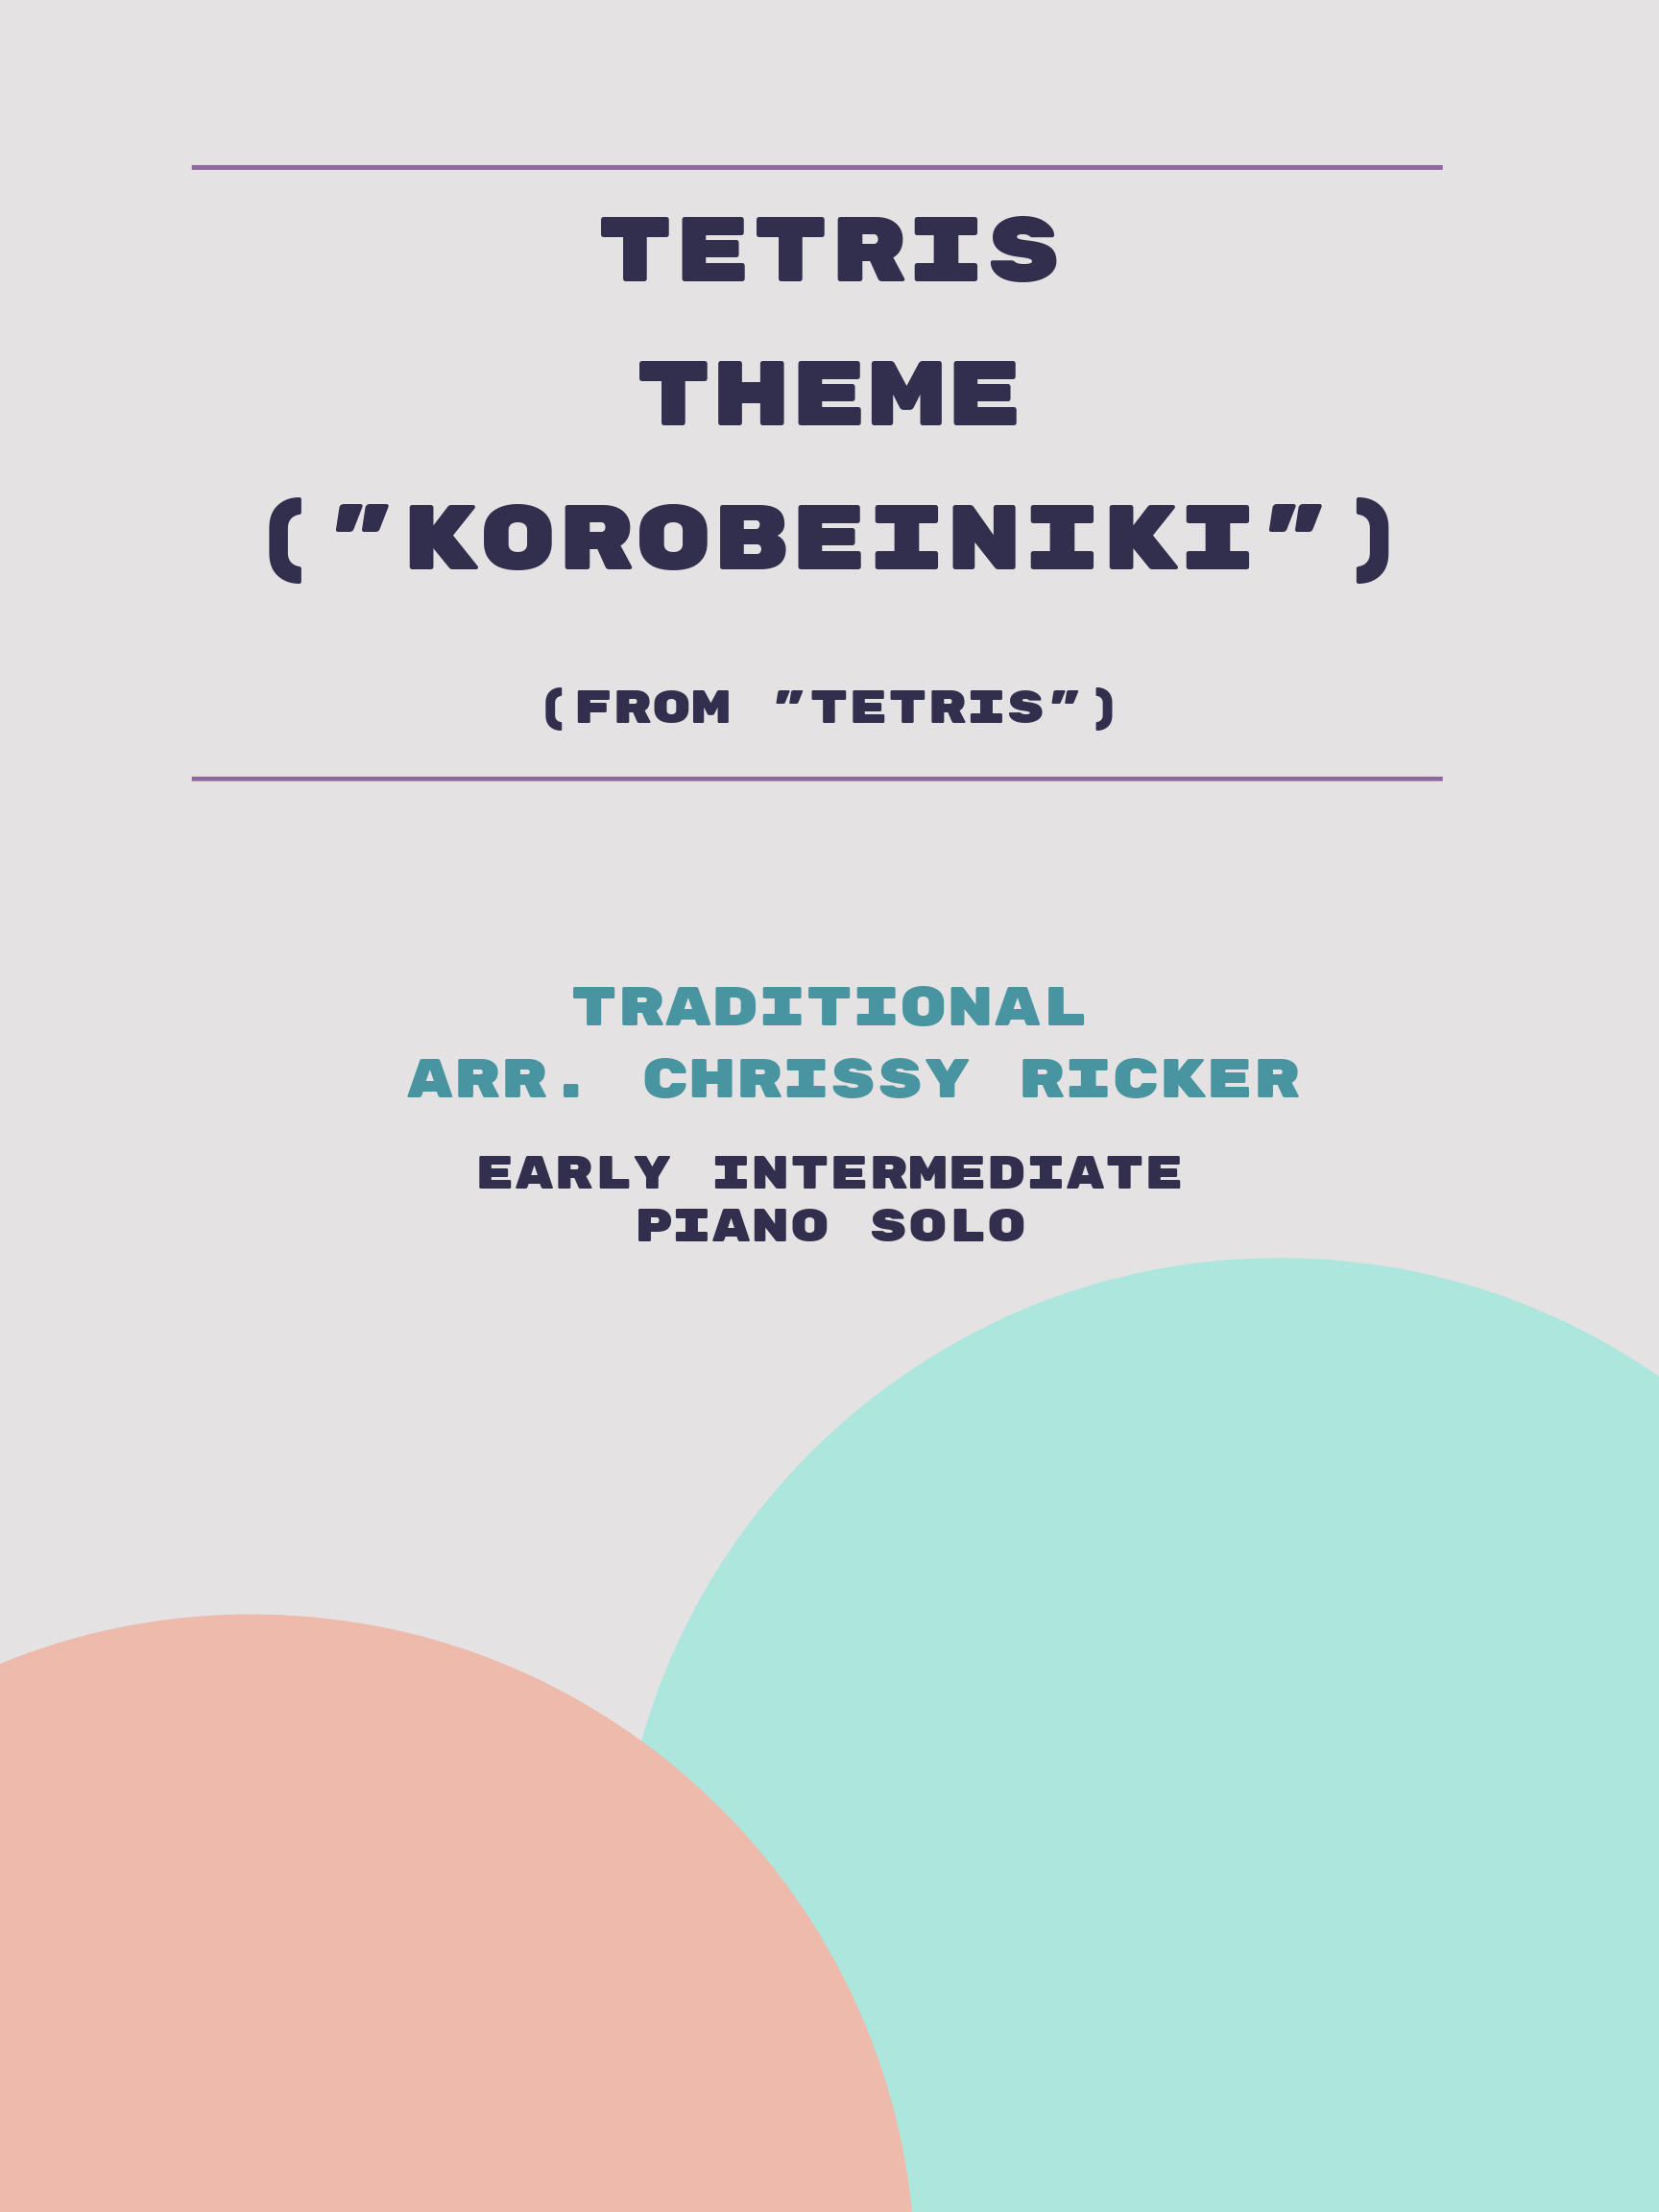 Tetris Theme ("Korobeiniki") by Traditional